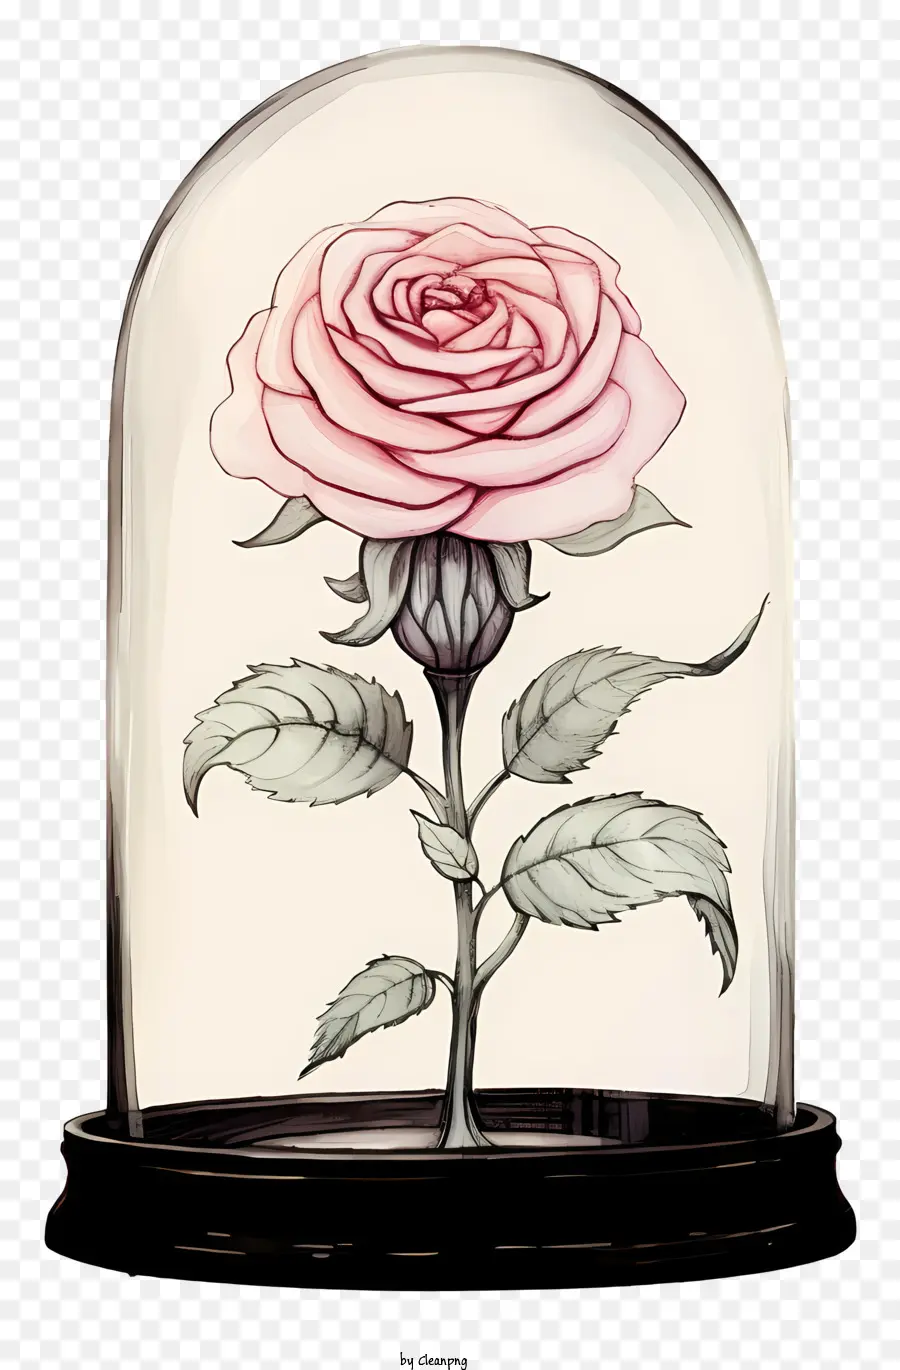 hoa hồng màu hồng - Hoa hồng có gai màu hồng trong vòm kính trong suốt